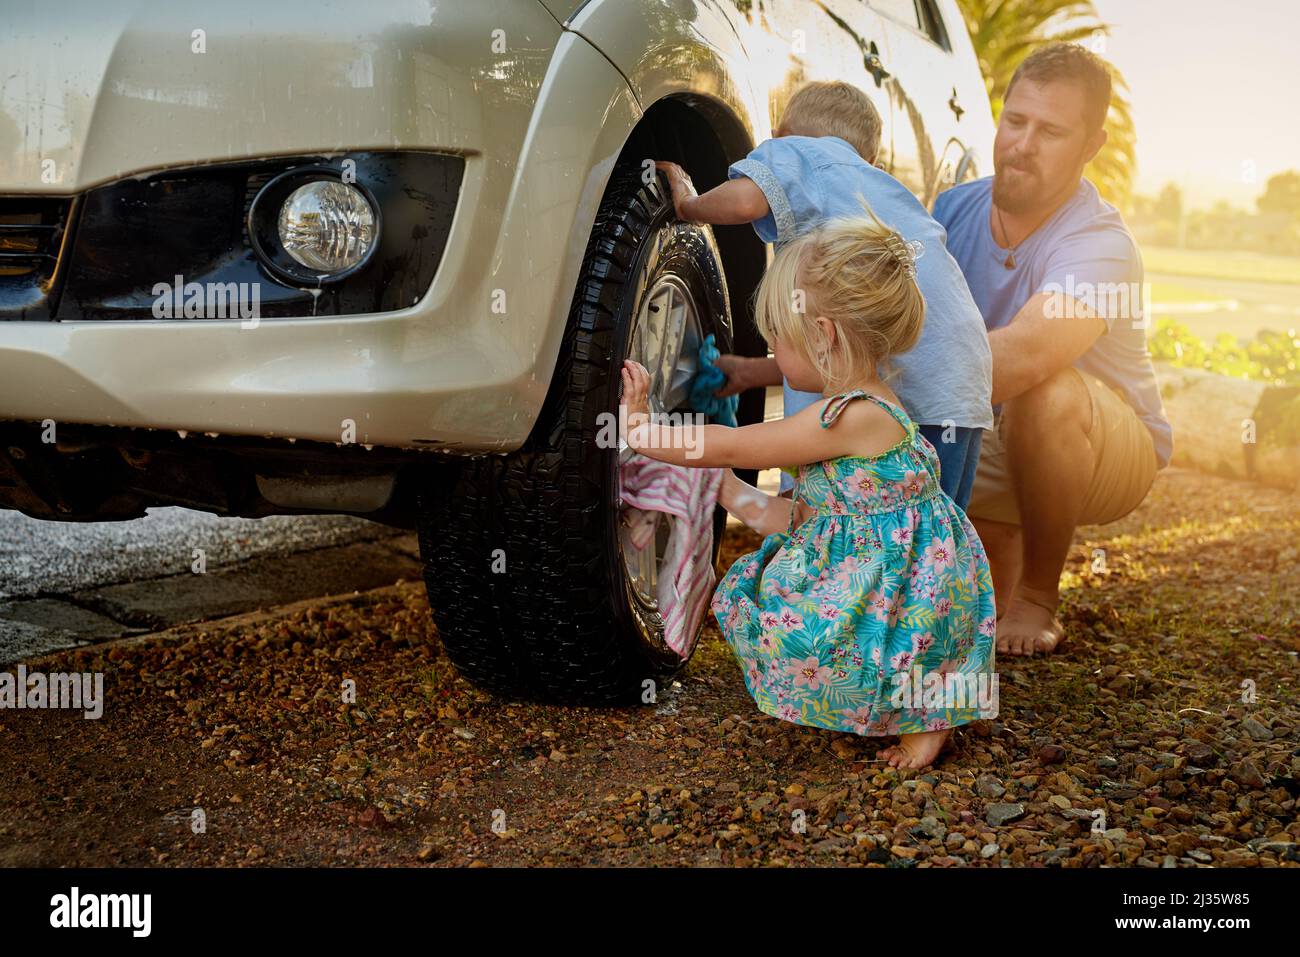 Sie sind immer bestrebt, Papa beim Waschen des Autos zu helfen. Aufnahme einer Familie, die ihr Auto gemeinsam wäscht. Stockfoto